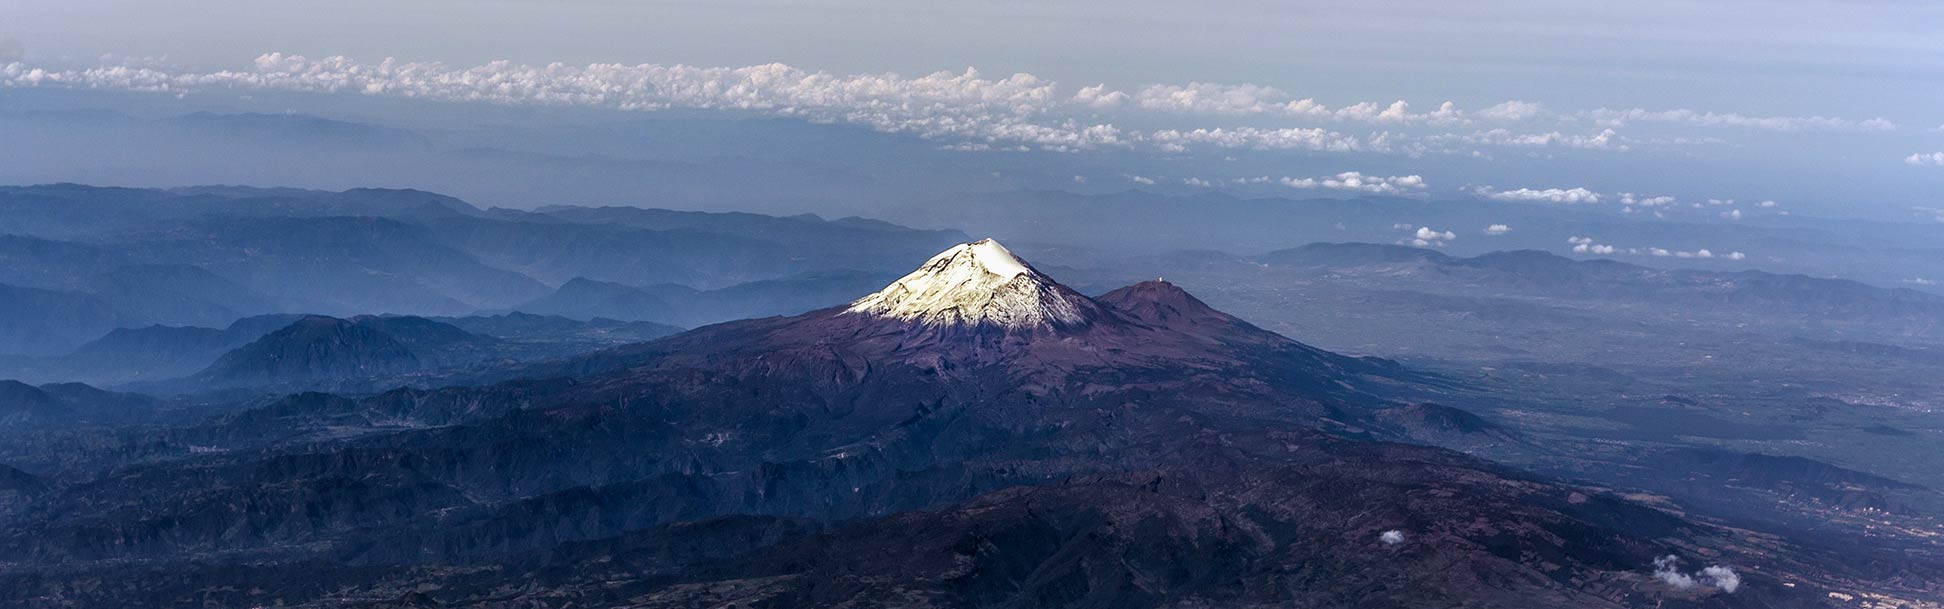 Citlaltépetl volcano in Mexico